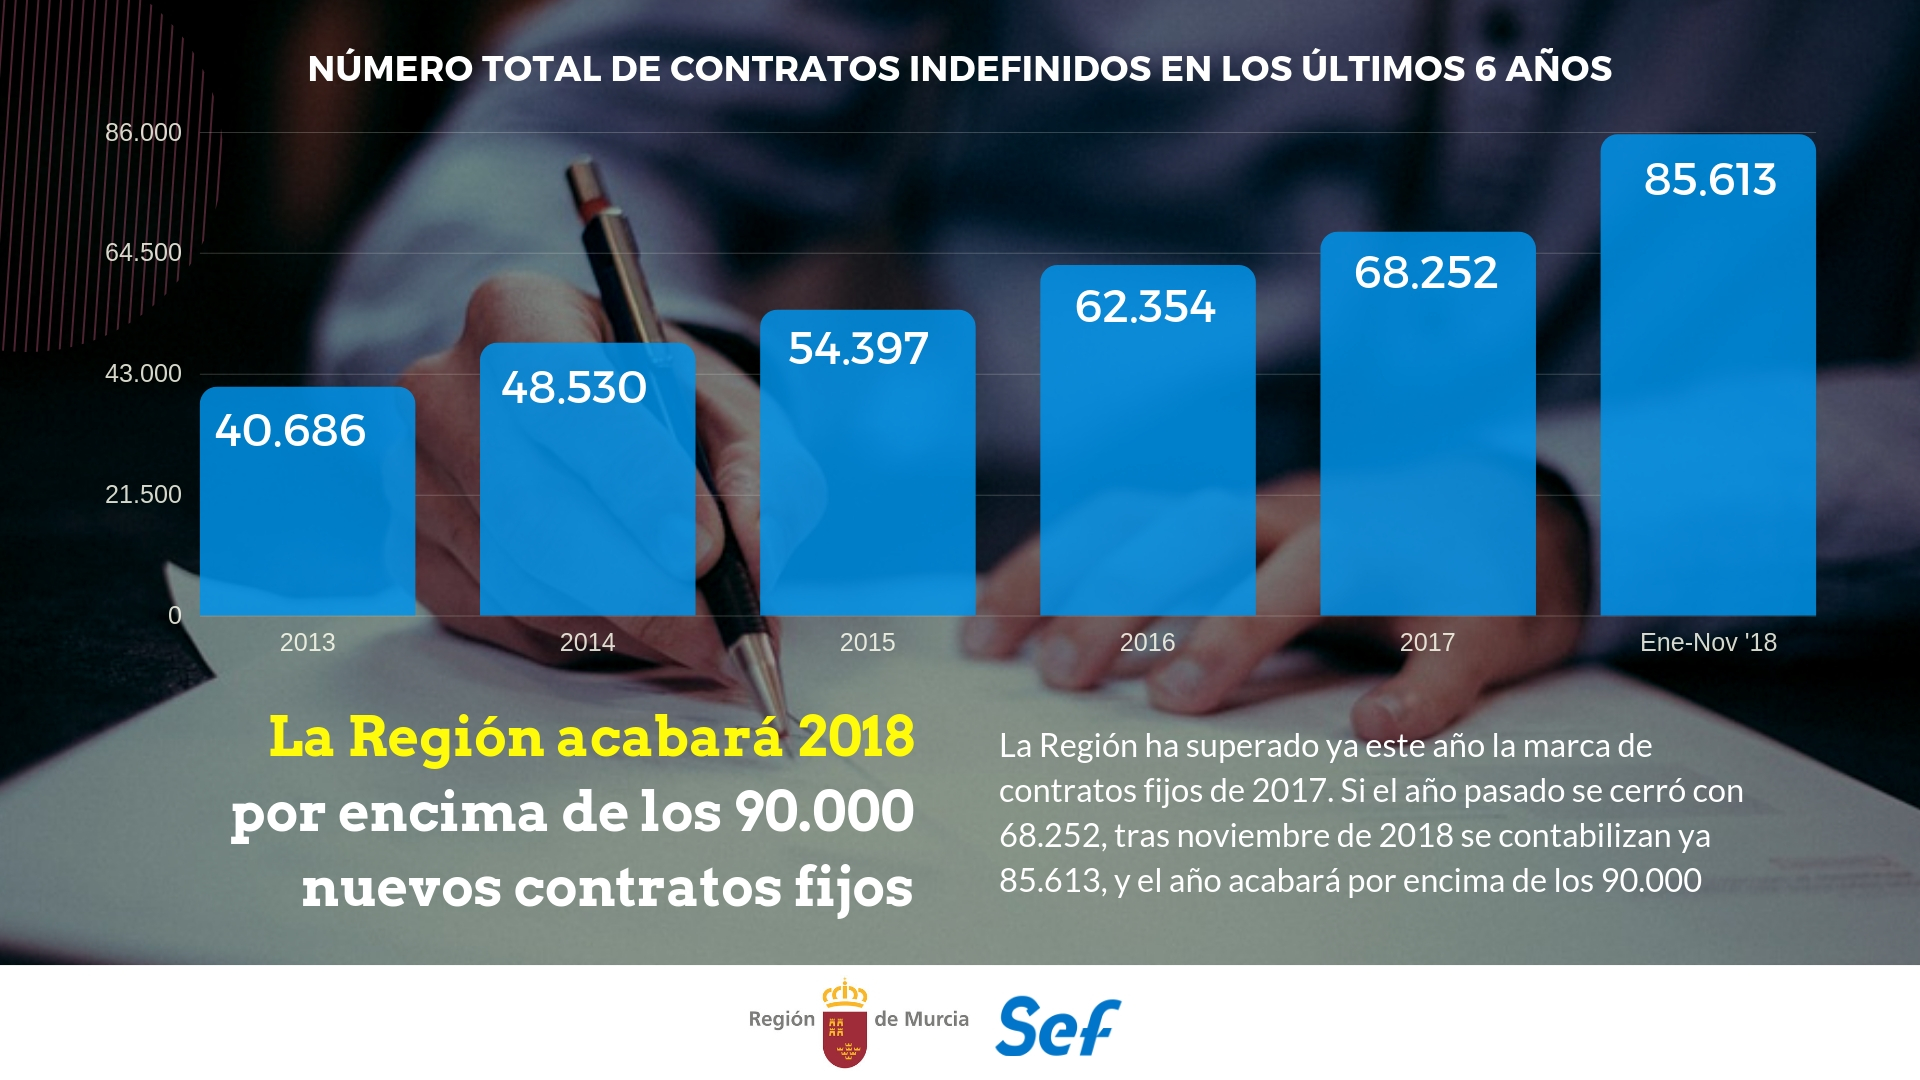 Gráfico: Evolución de la cifra de contratos indefinidos en la Región de Murcia durante los últimos seis años